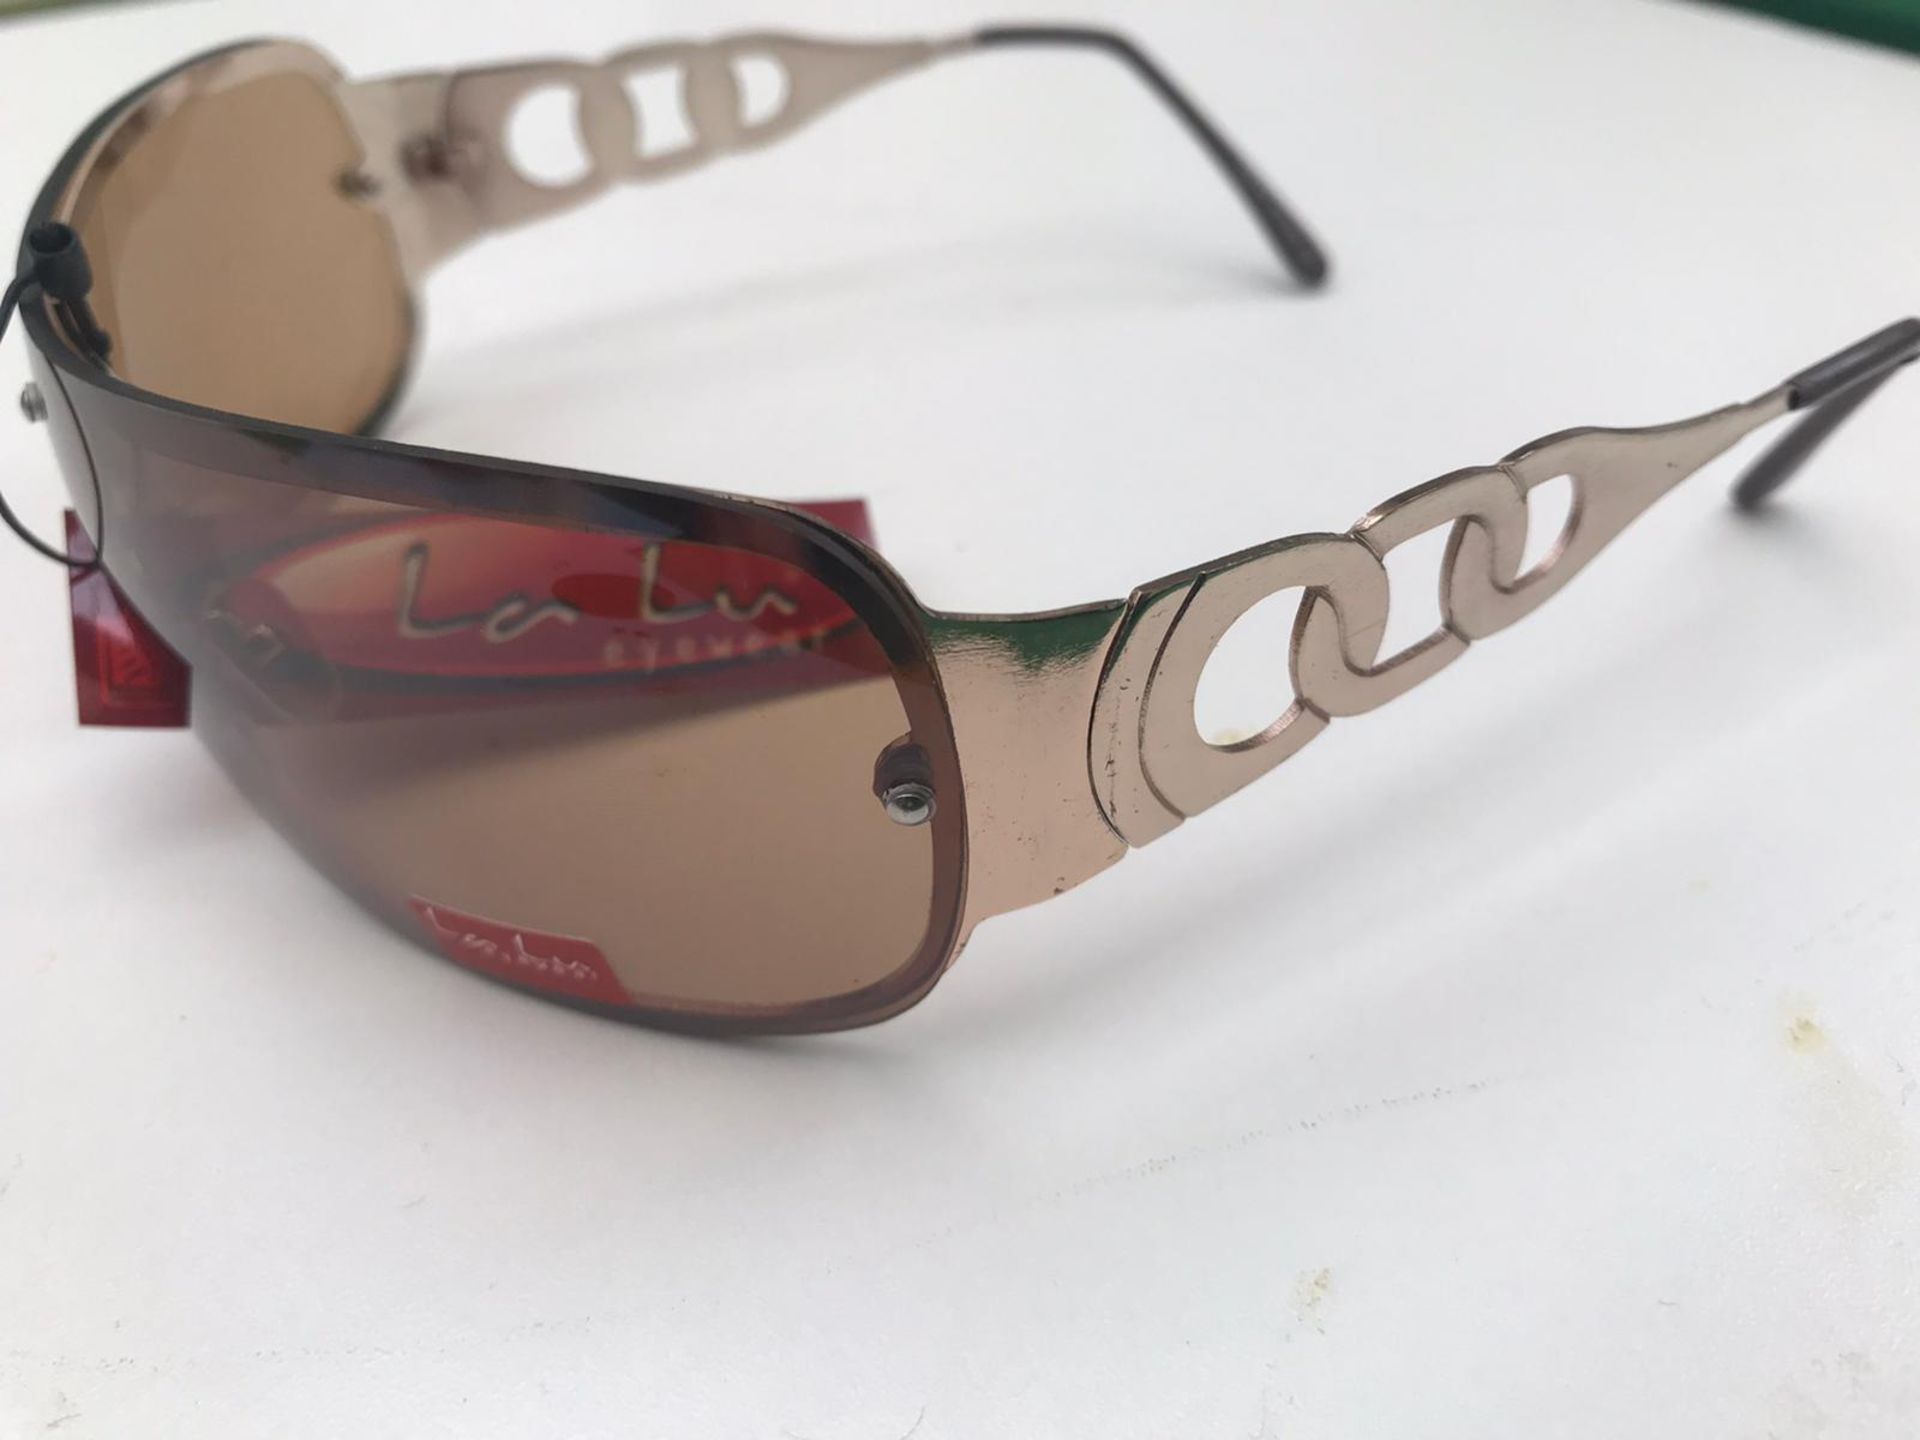 500x La Lu Branded Sunglasses | Various Styles | Unopened & Unused - Image 27 of 33